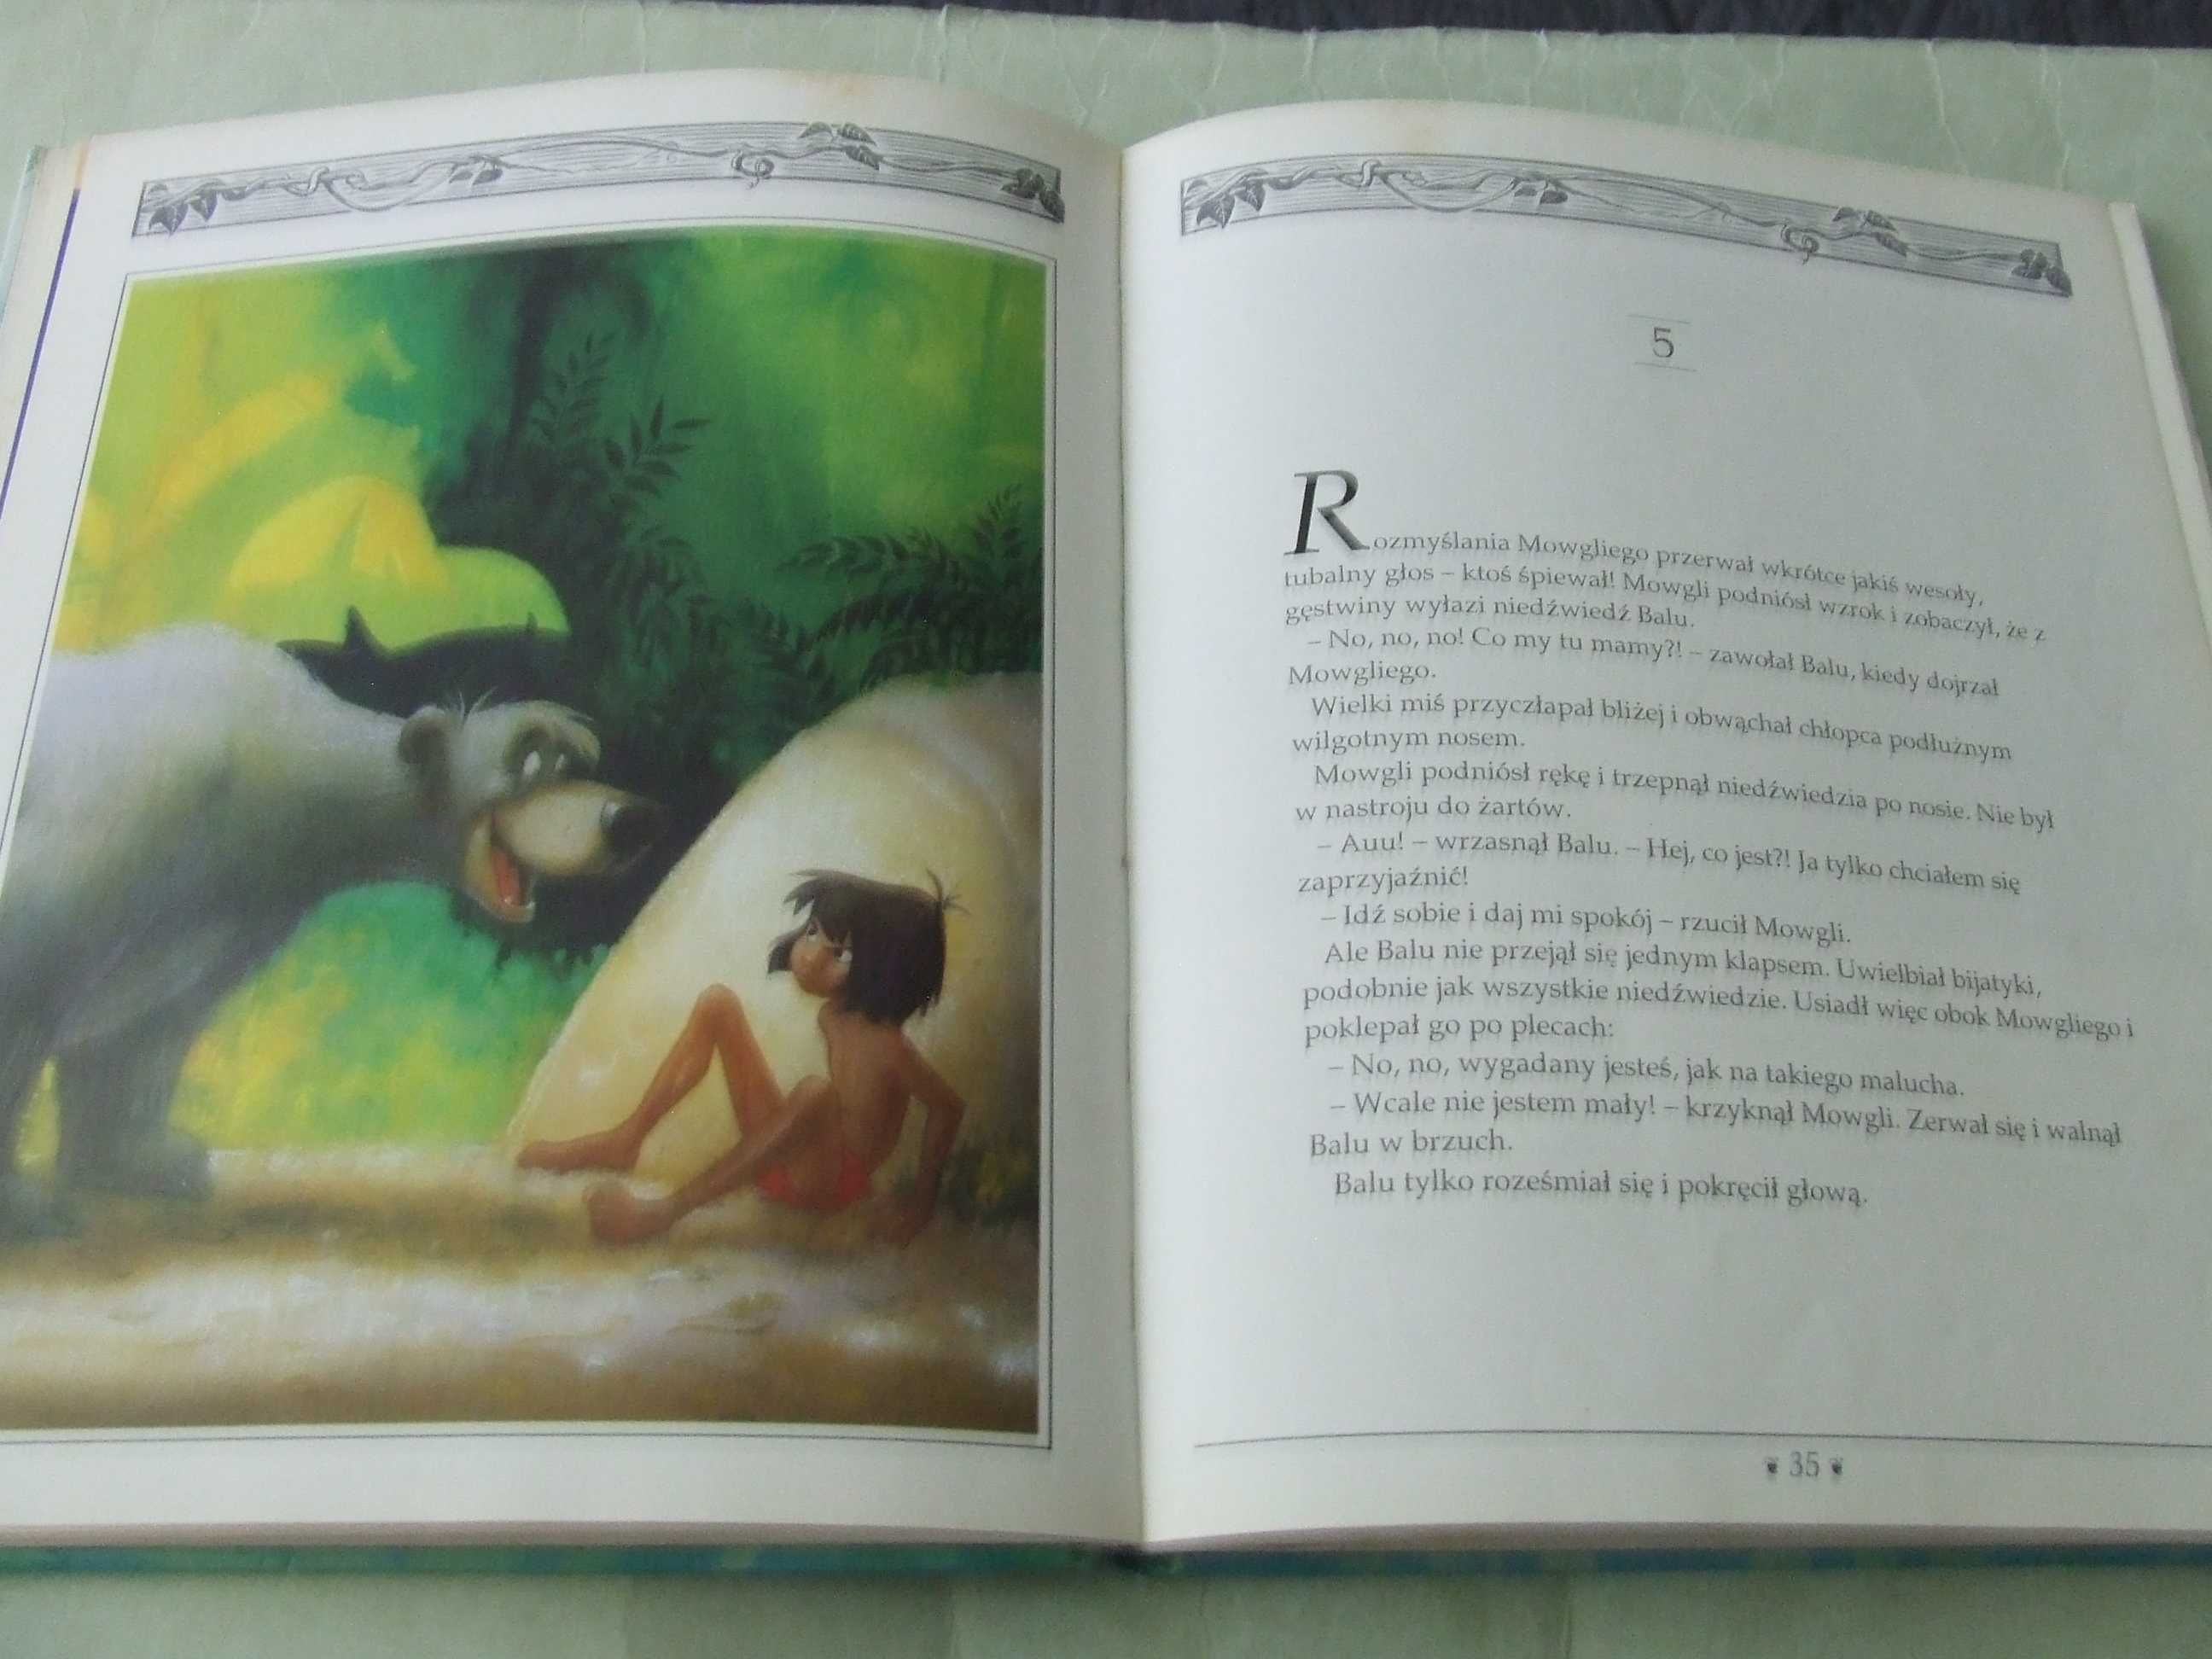 Urodziny Puchatka + Księga dżungli Disney / Iskierka Wejner